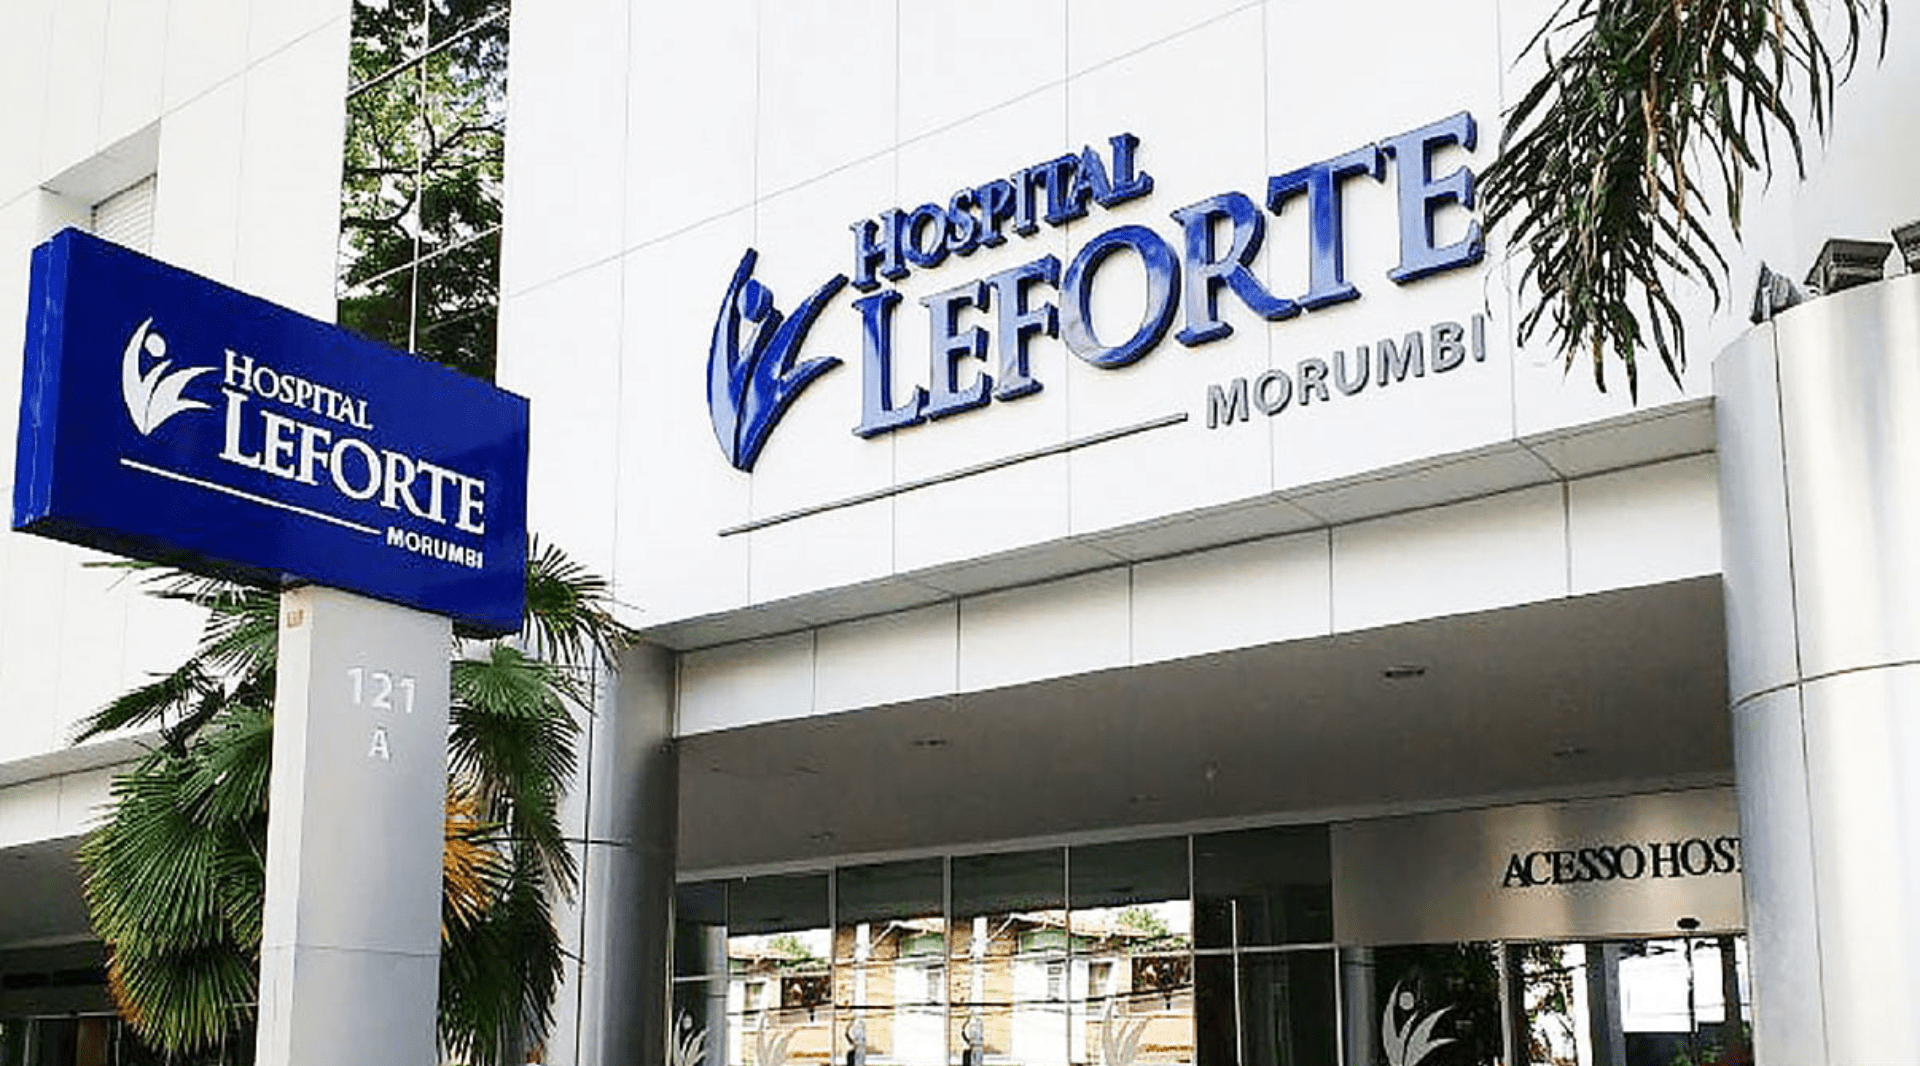 MV simplifica gestão e potencializa resultados no Hospital Leforte